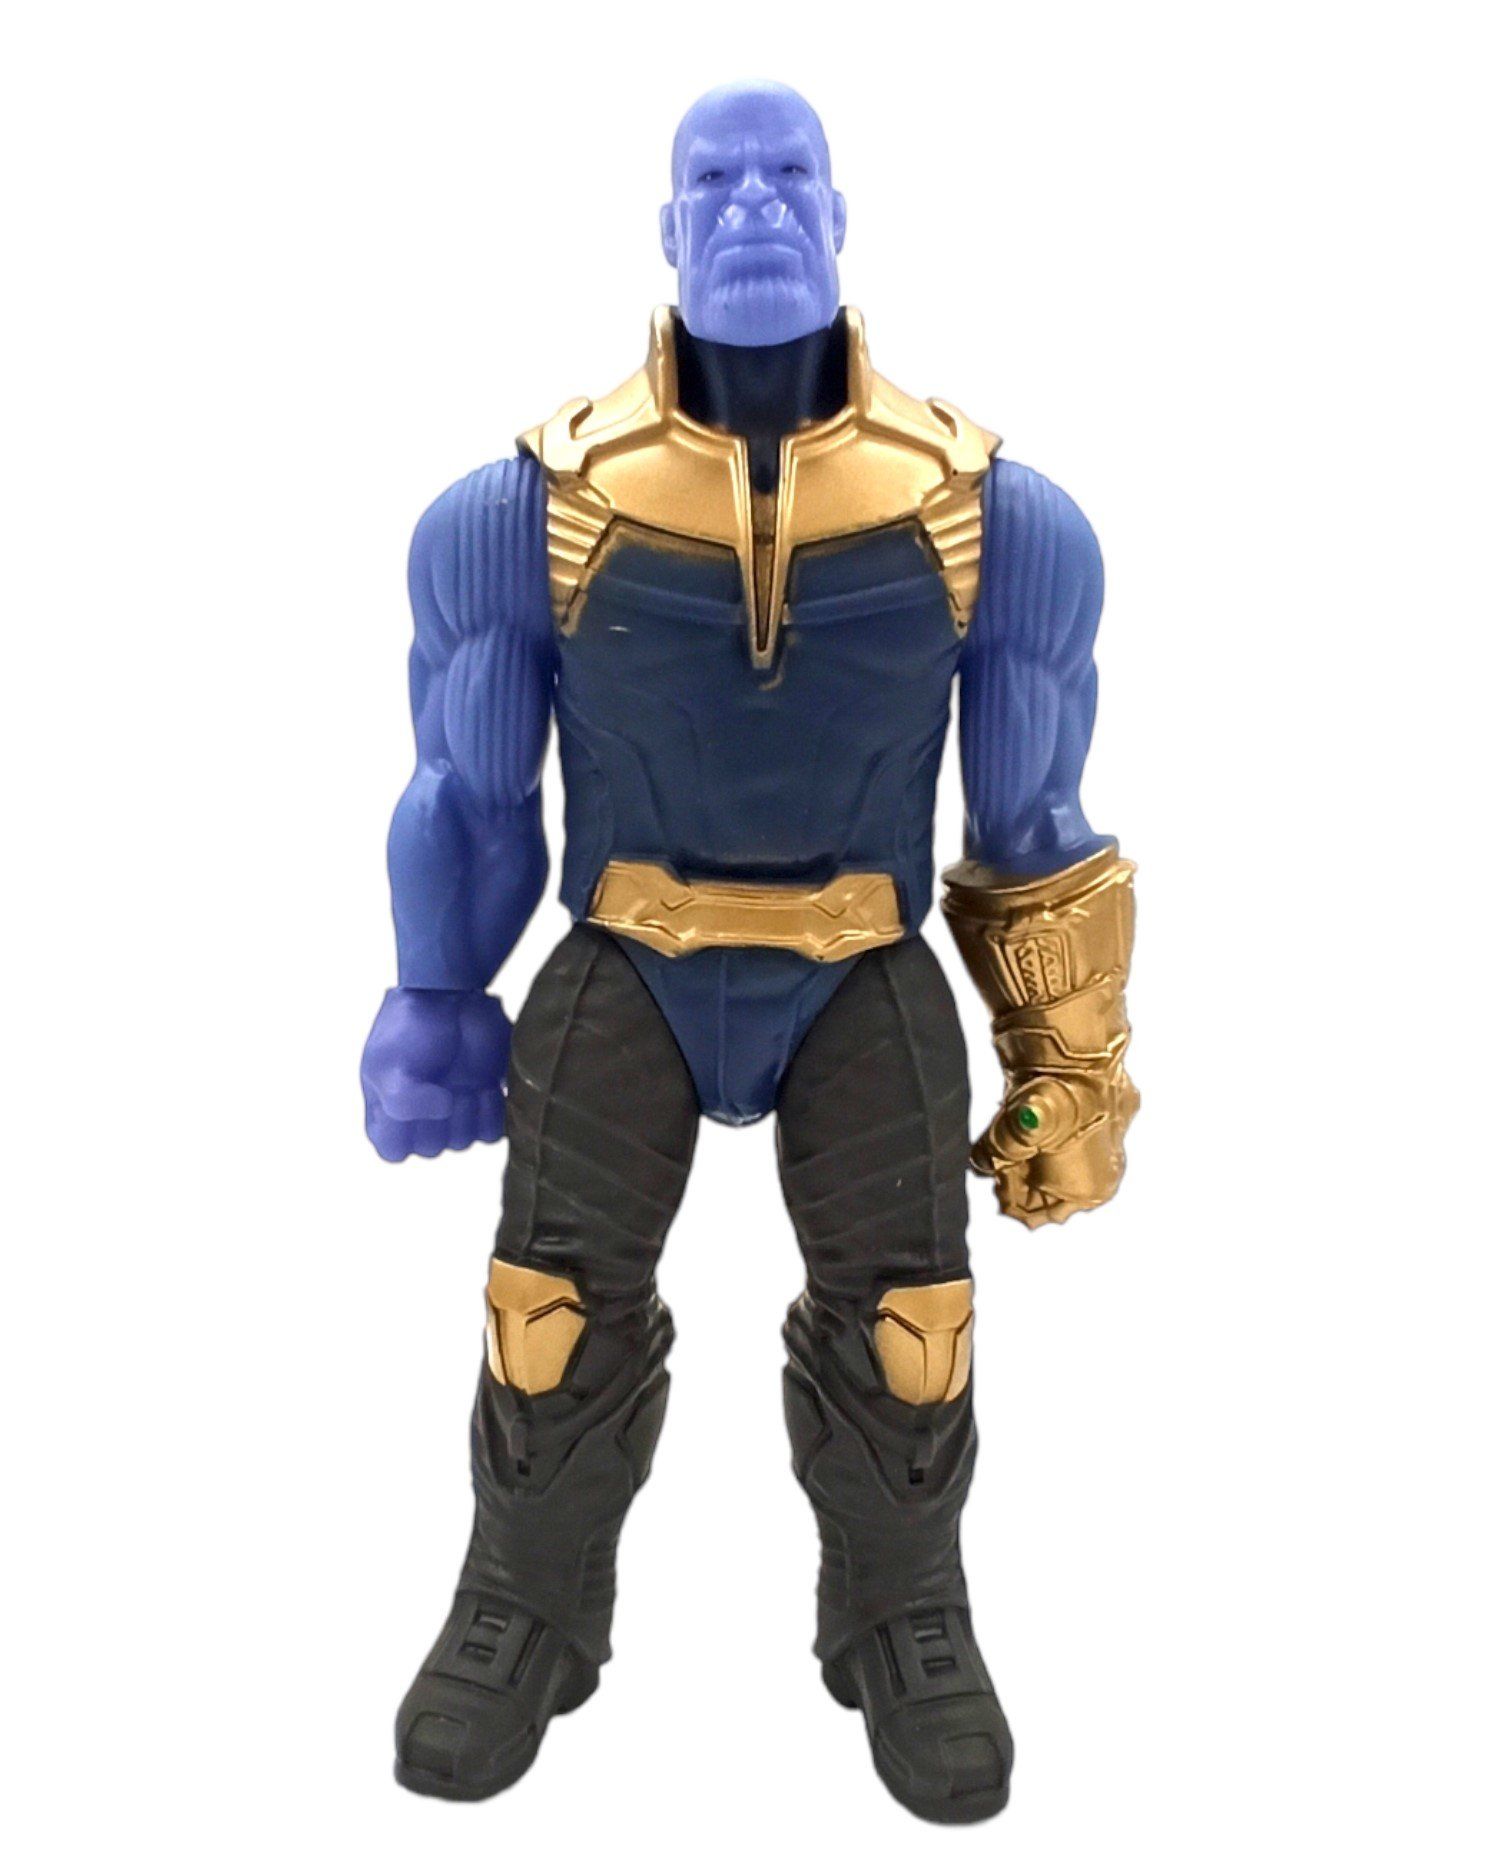 Avengers Thanos Karakteri 30cm. Oyuncak Thanos Figürü 30cm.